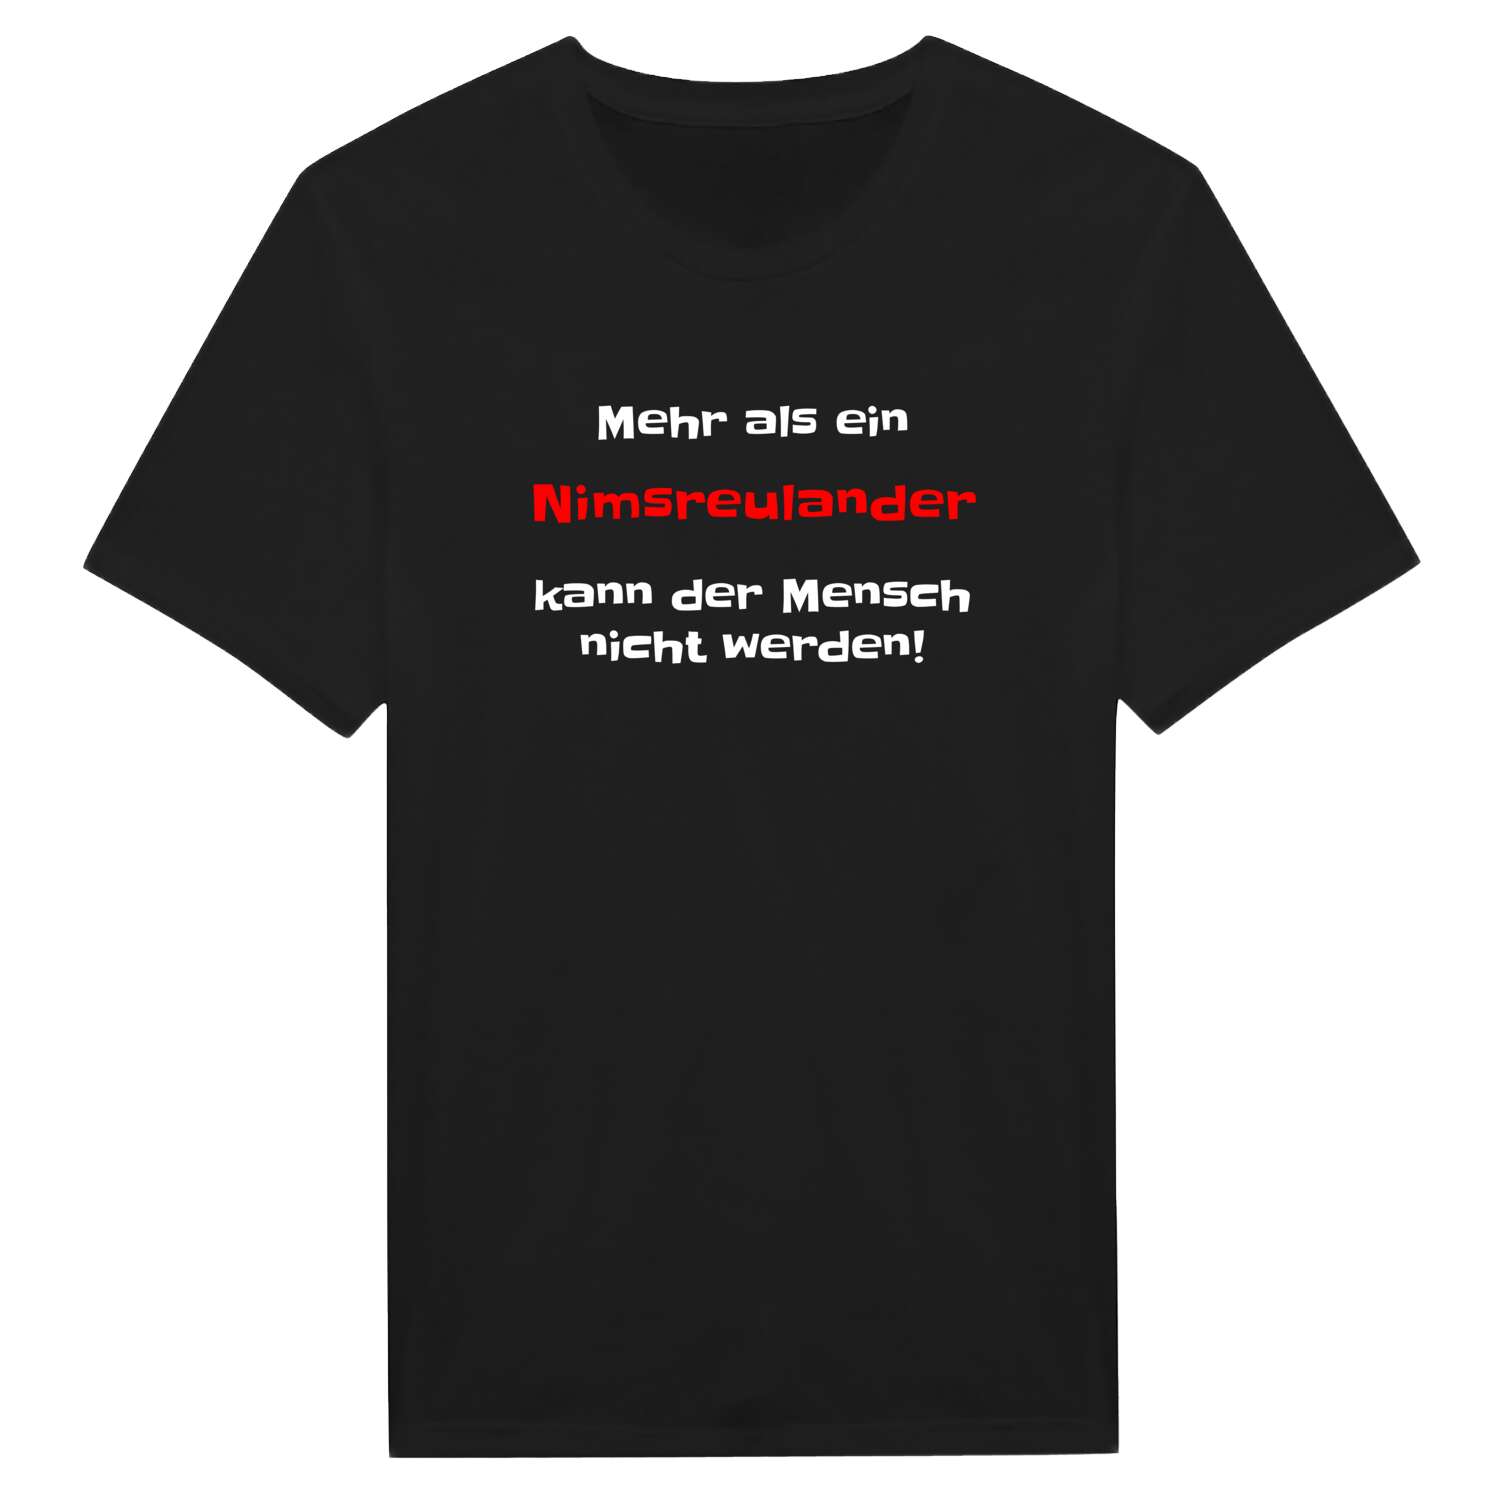 Nimsreuland T-Shirt »Mehr als ein«